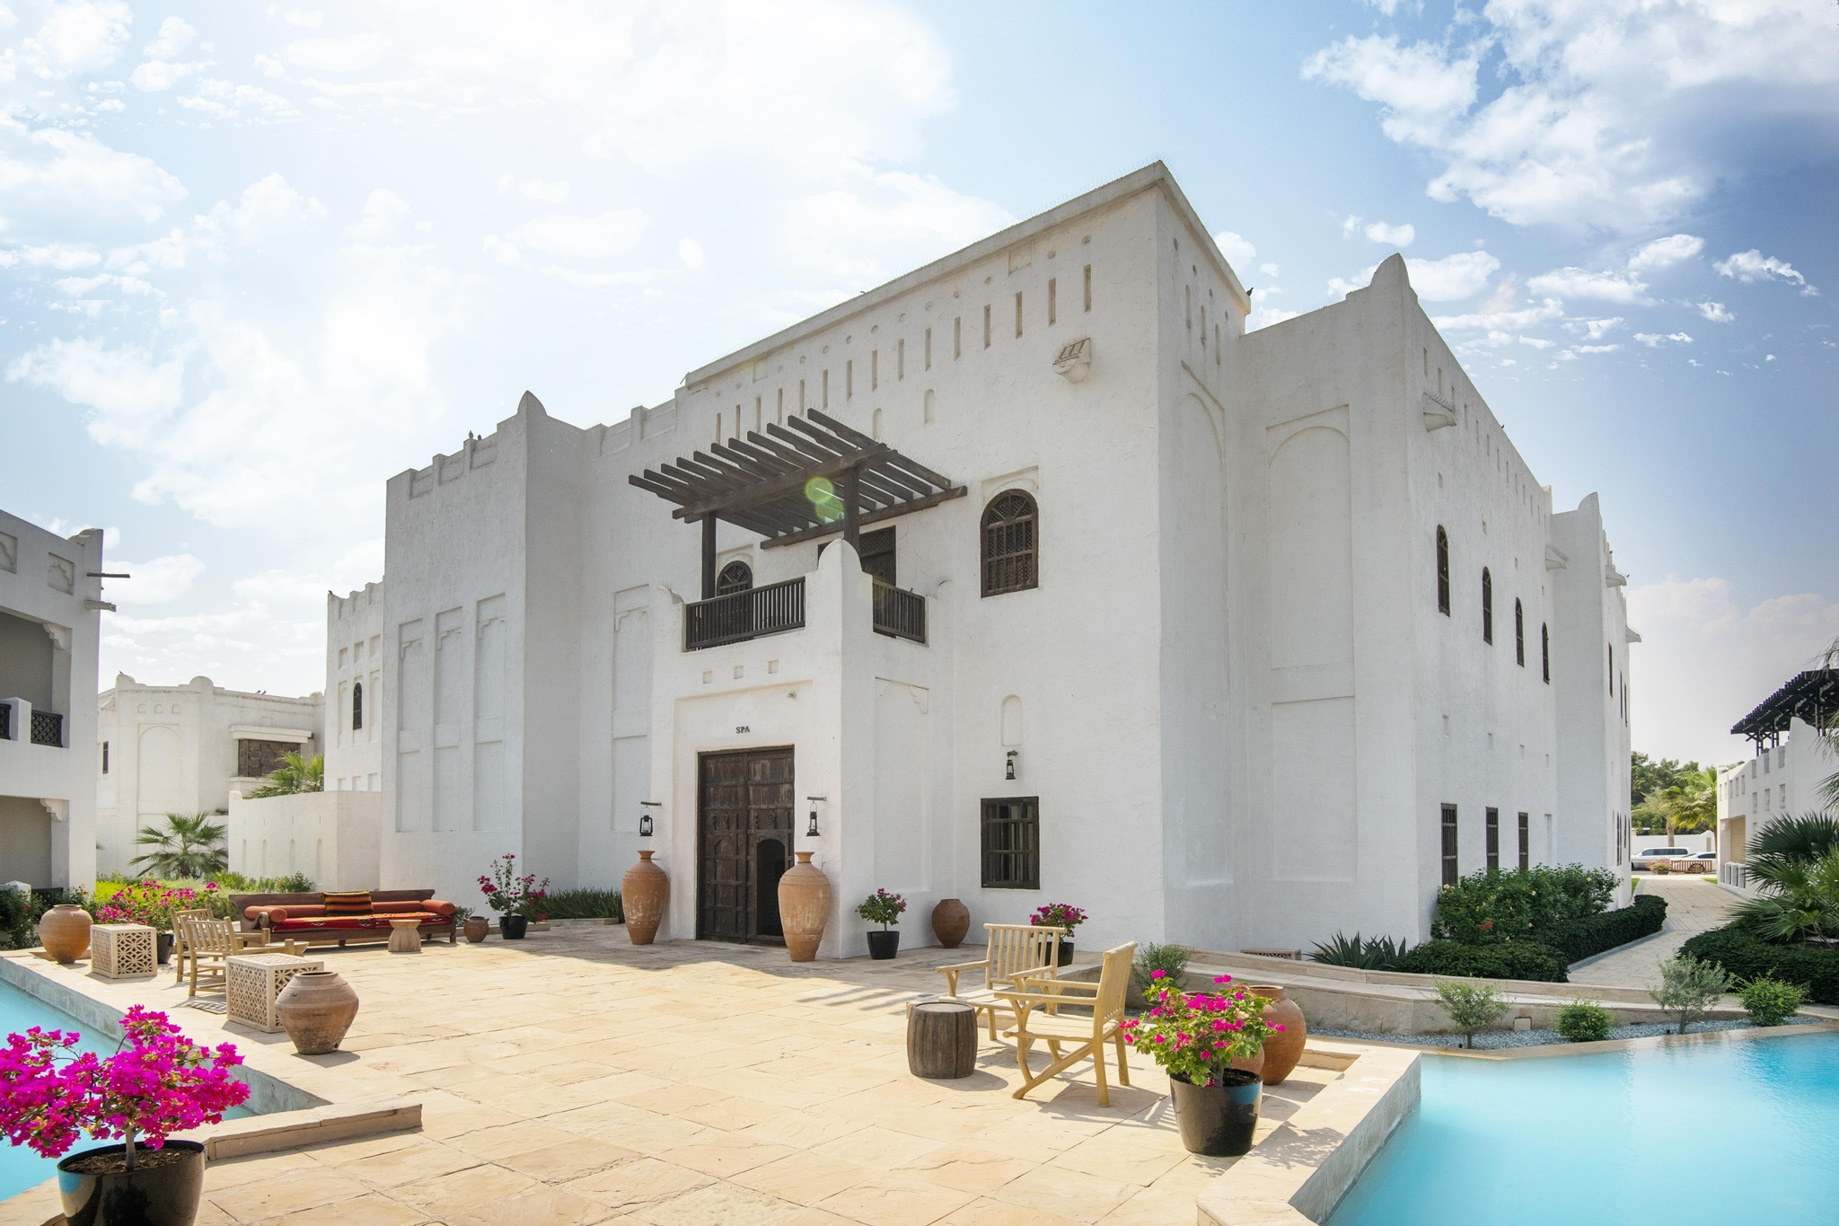 Sharq Village & Spa, A Ritz-Carlton Hotel – Doha, Qatar – Spa Exterior